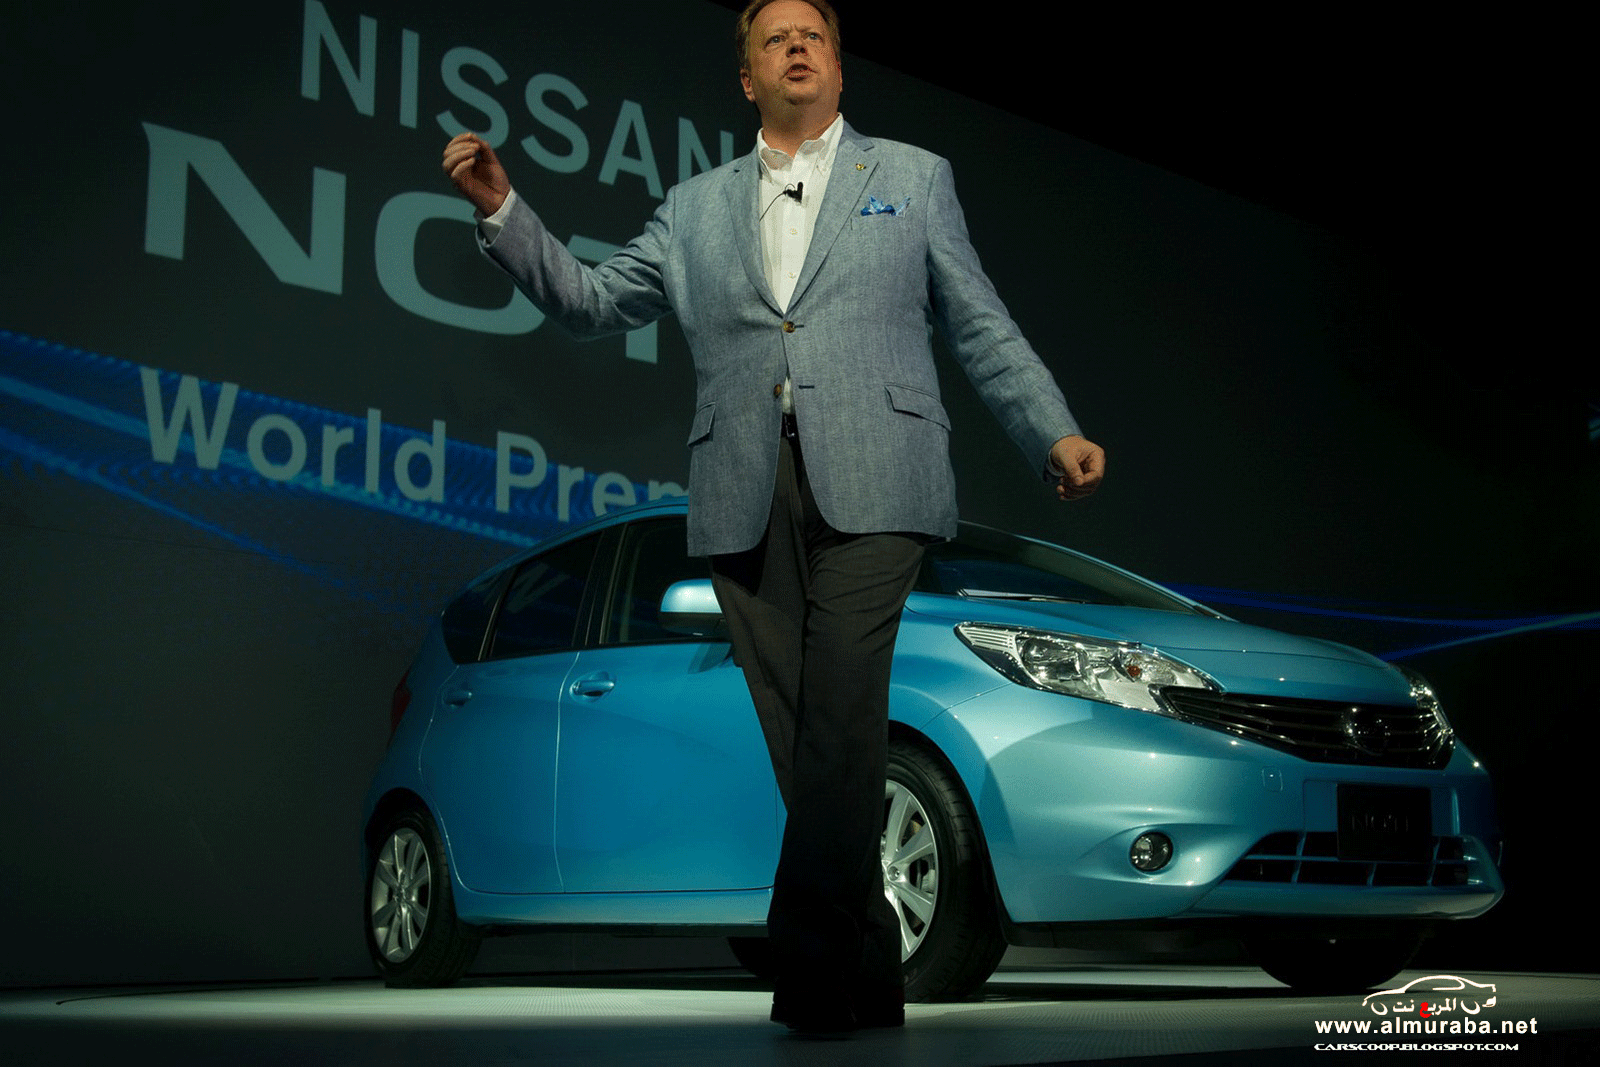 نيسان نوت 2013 الجديدة السيارة الاقتصادية صور واسعار ومواصفات Nissan Note 2013 25